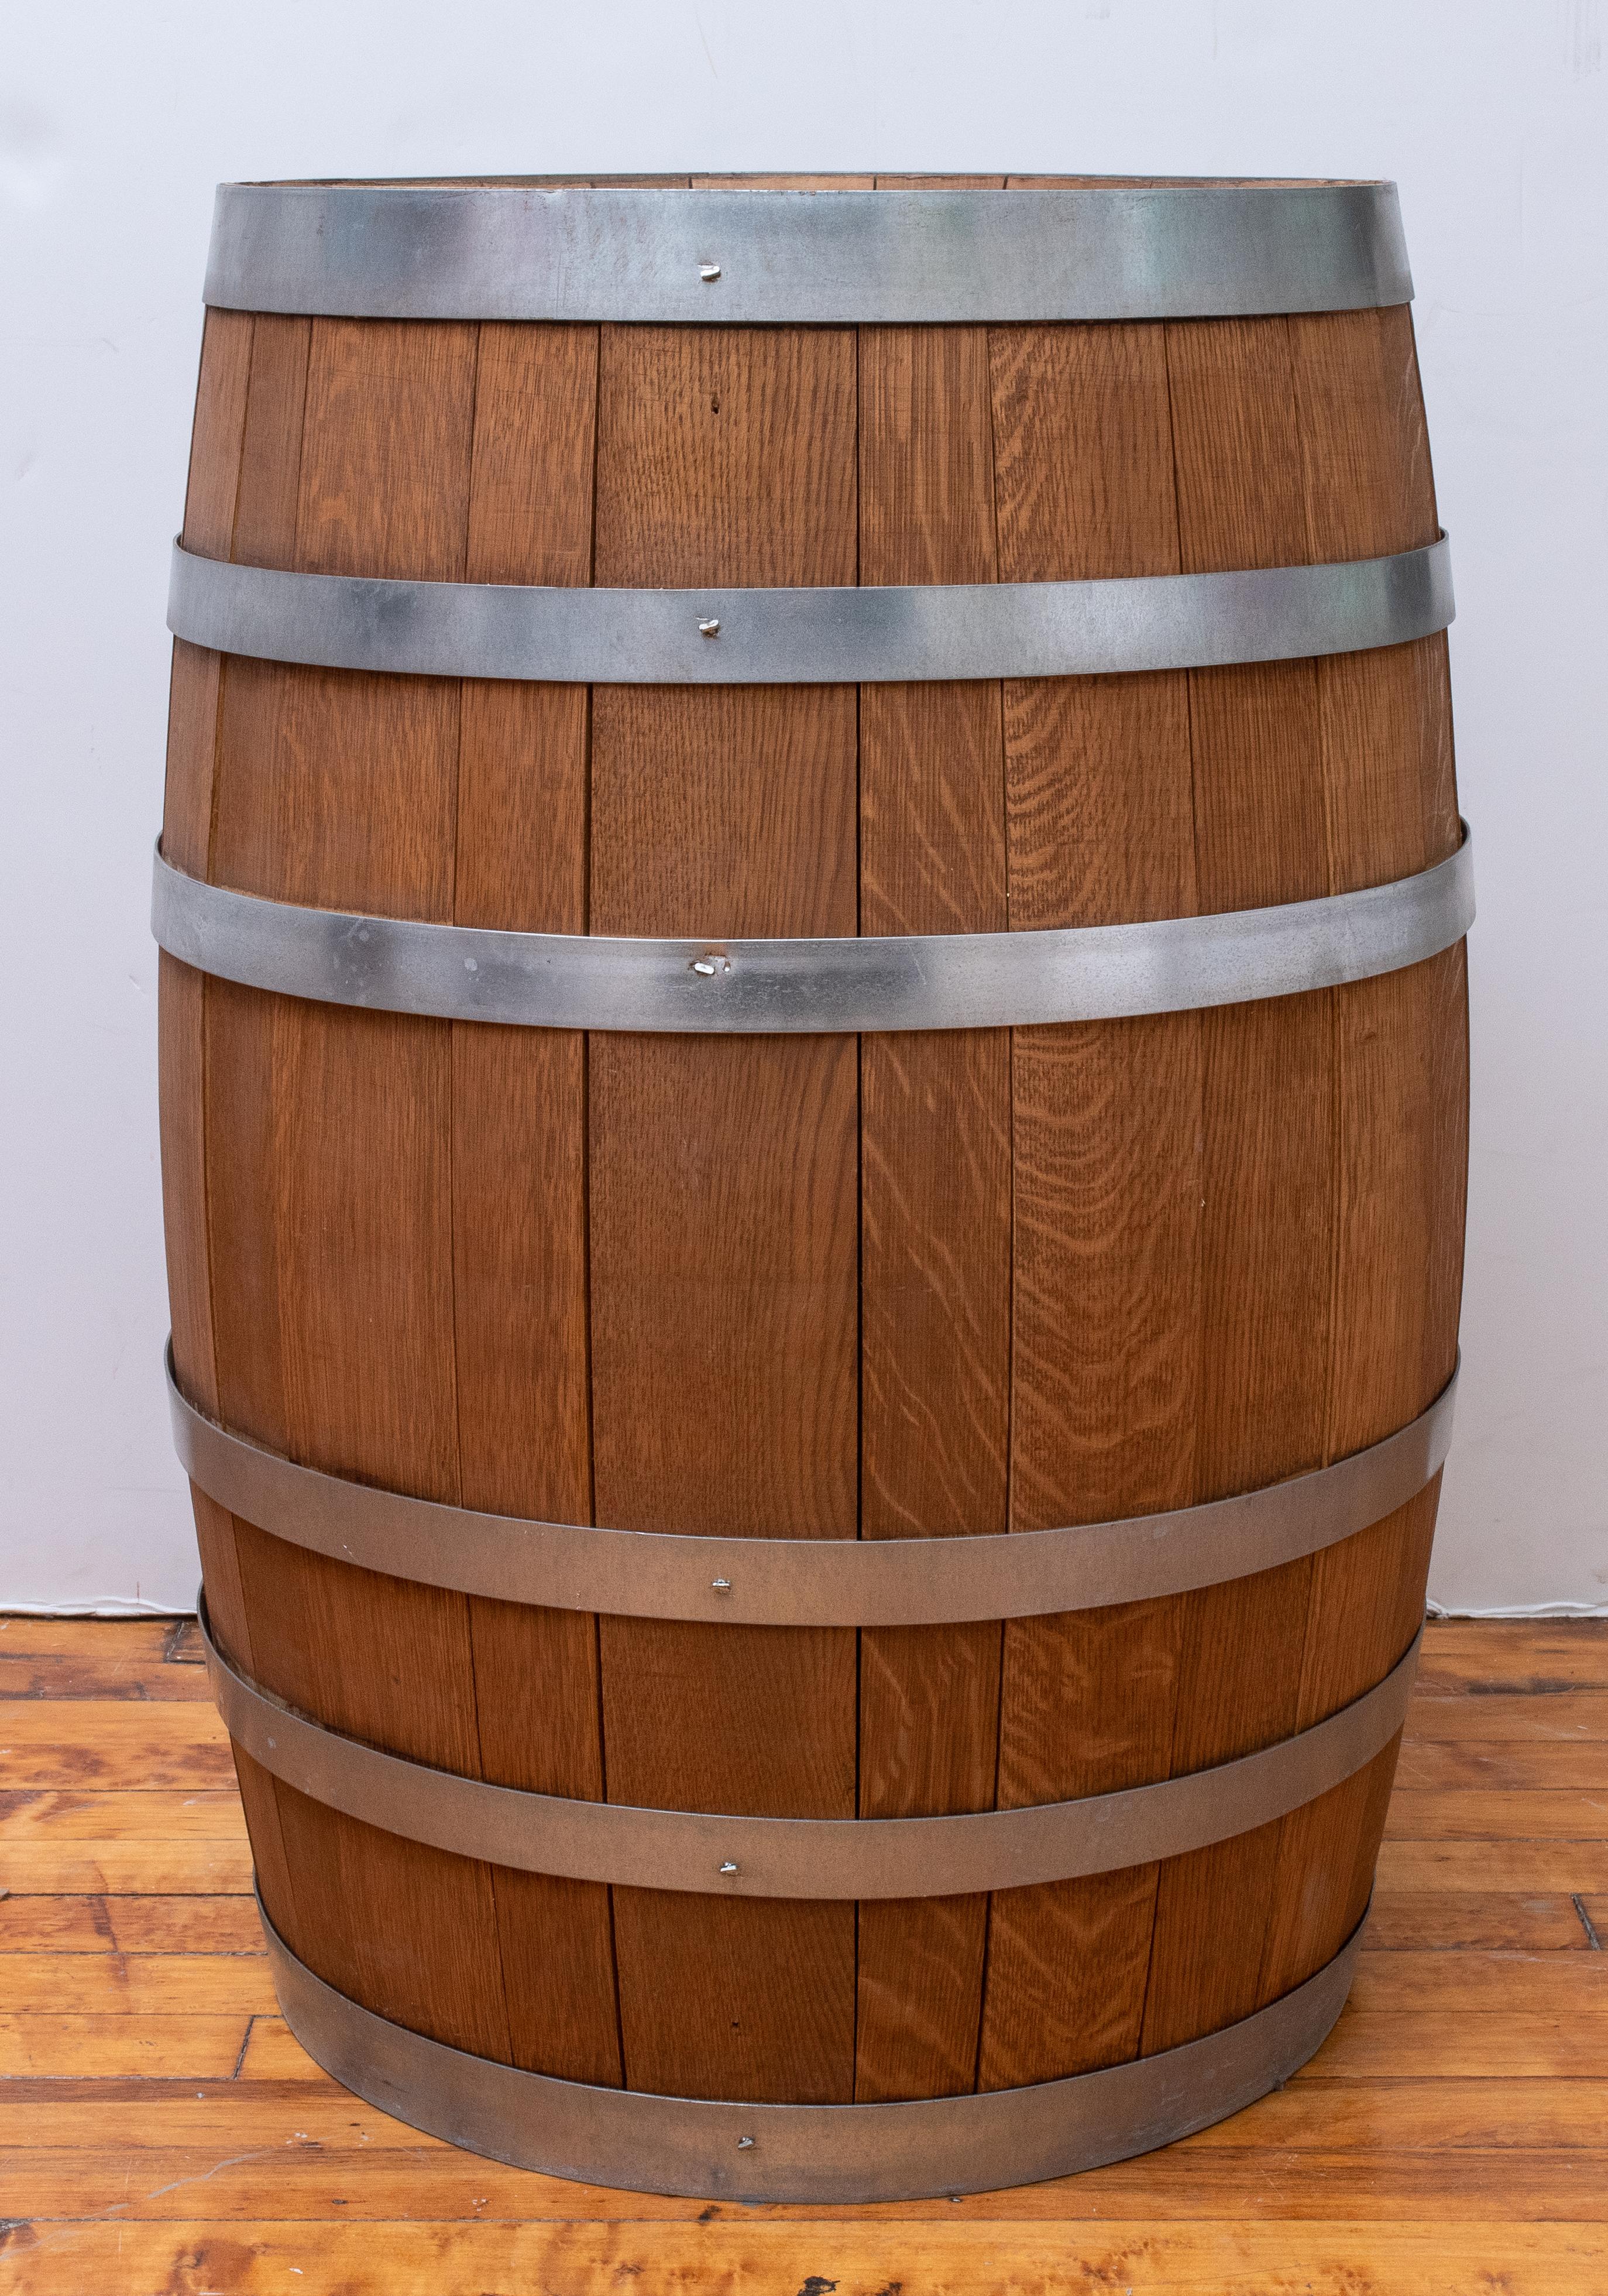 A steel-banded oak wine cask. 
Measures: 29